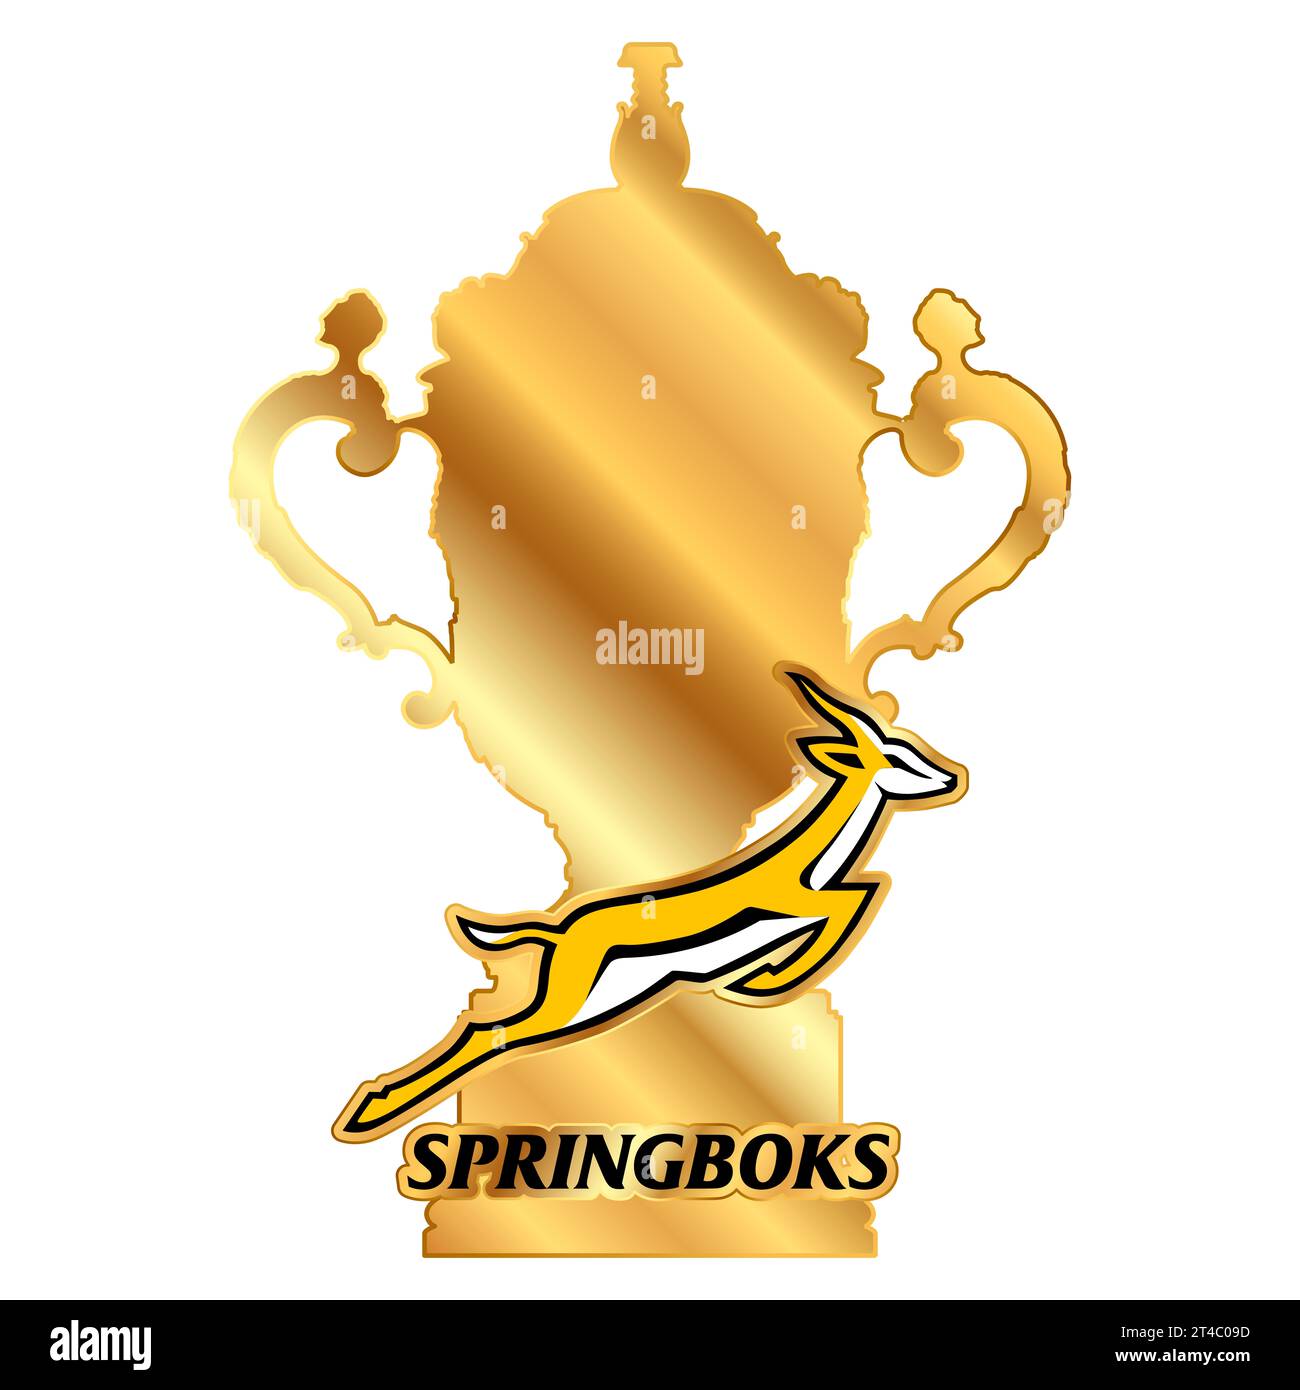 Copa Mundial de Rugby 2023 y campeón del equipo sudafricano Springboks logo, campeones del mundo, ilustración Foto de stock